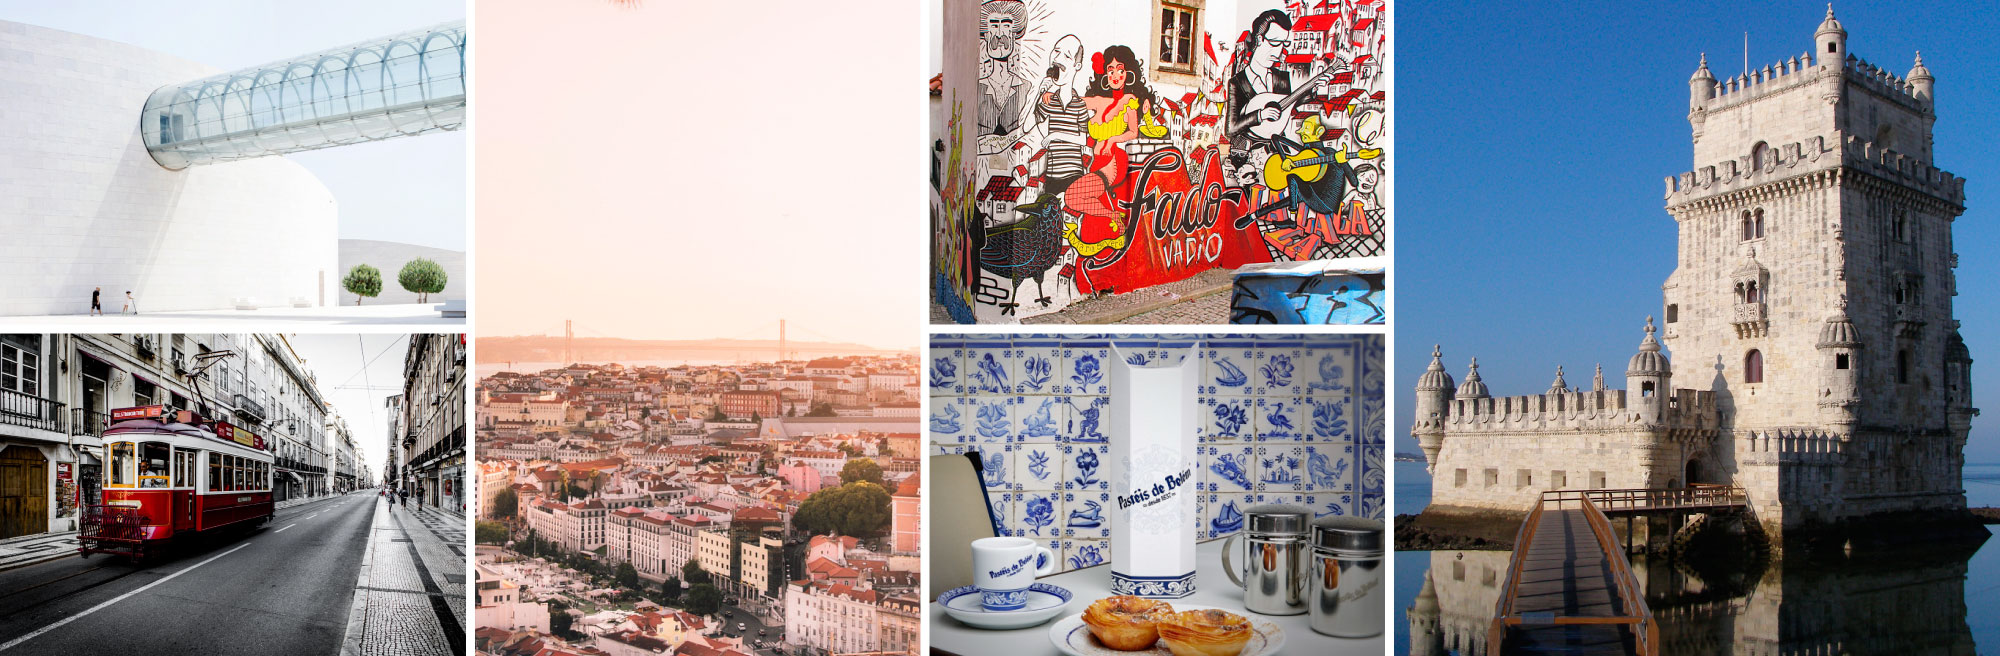 Lisbon Europe's coolest city